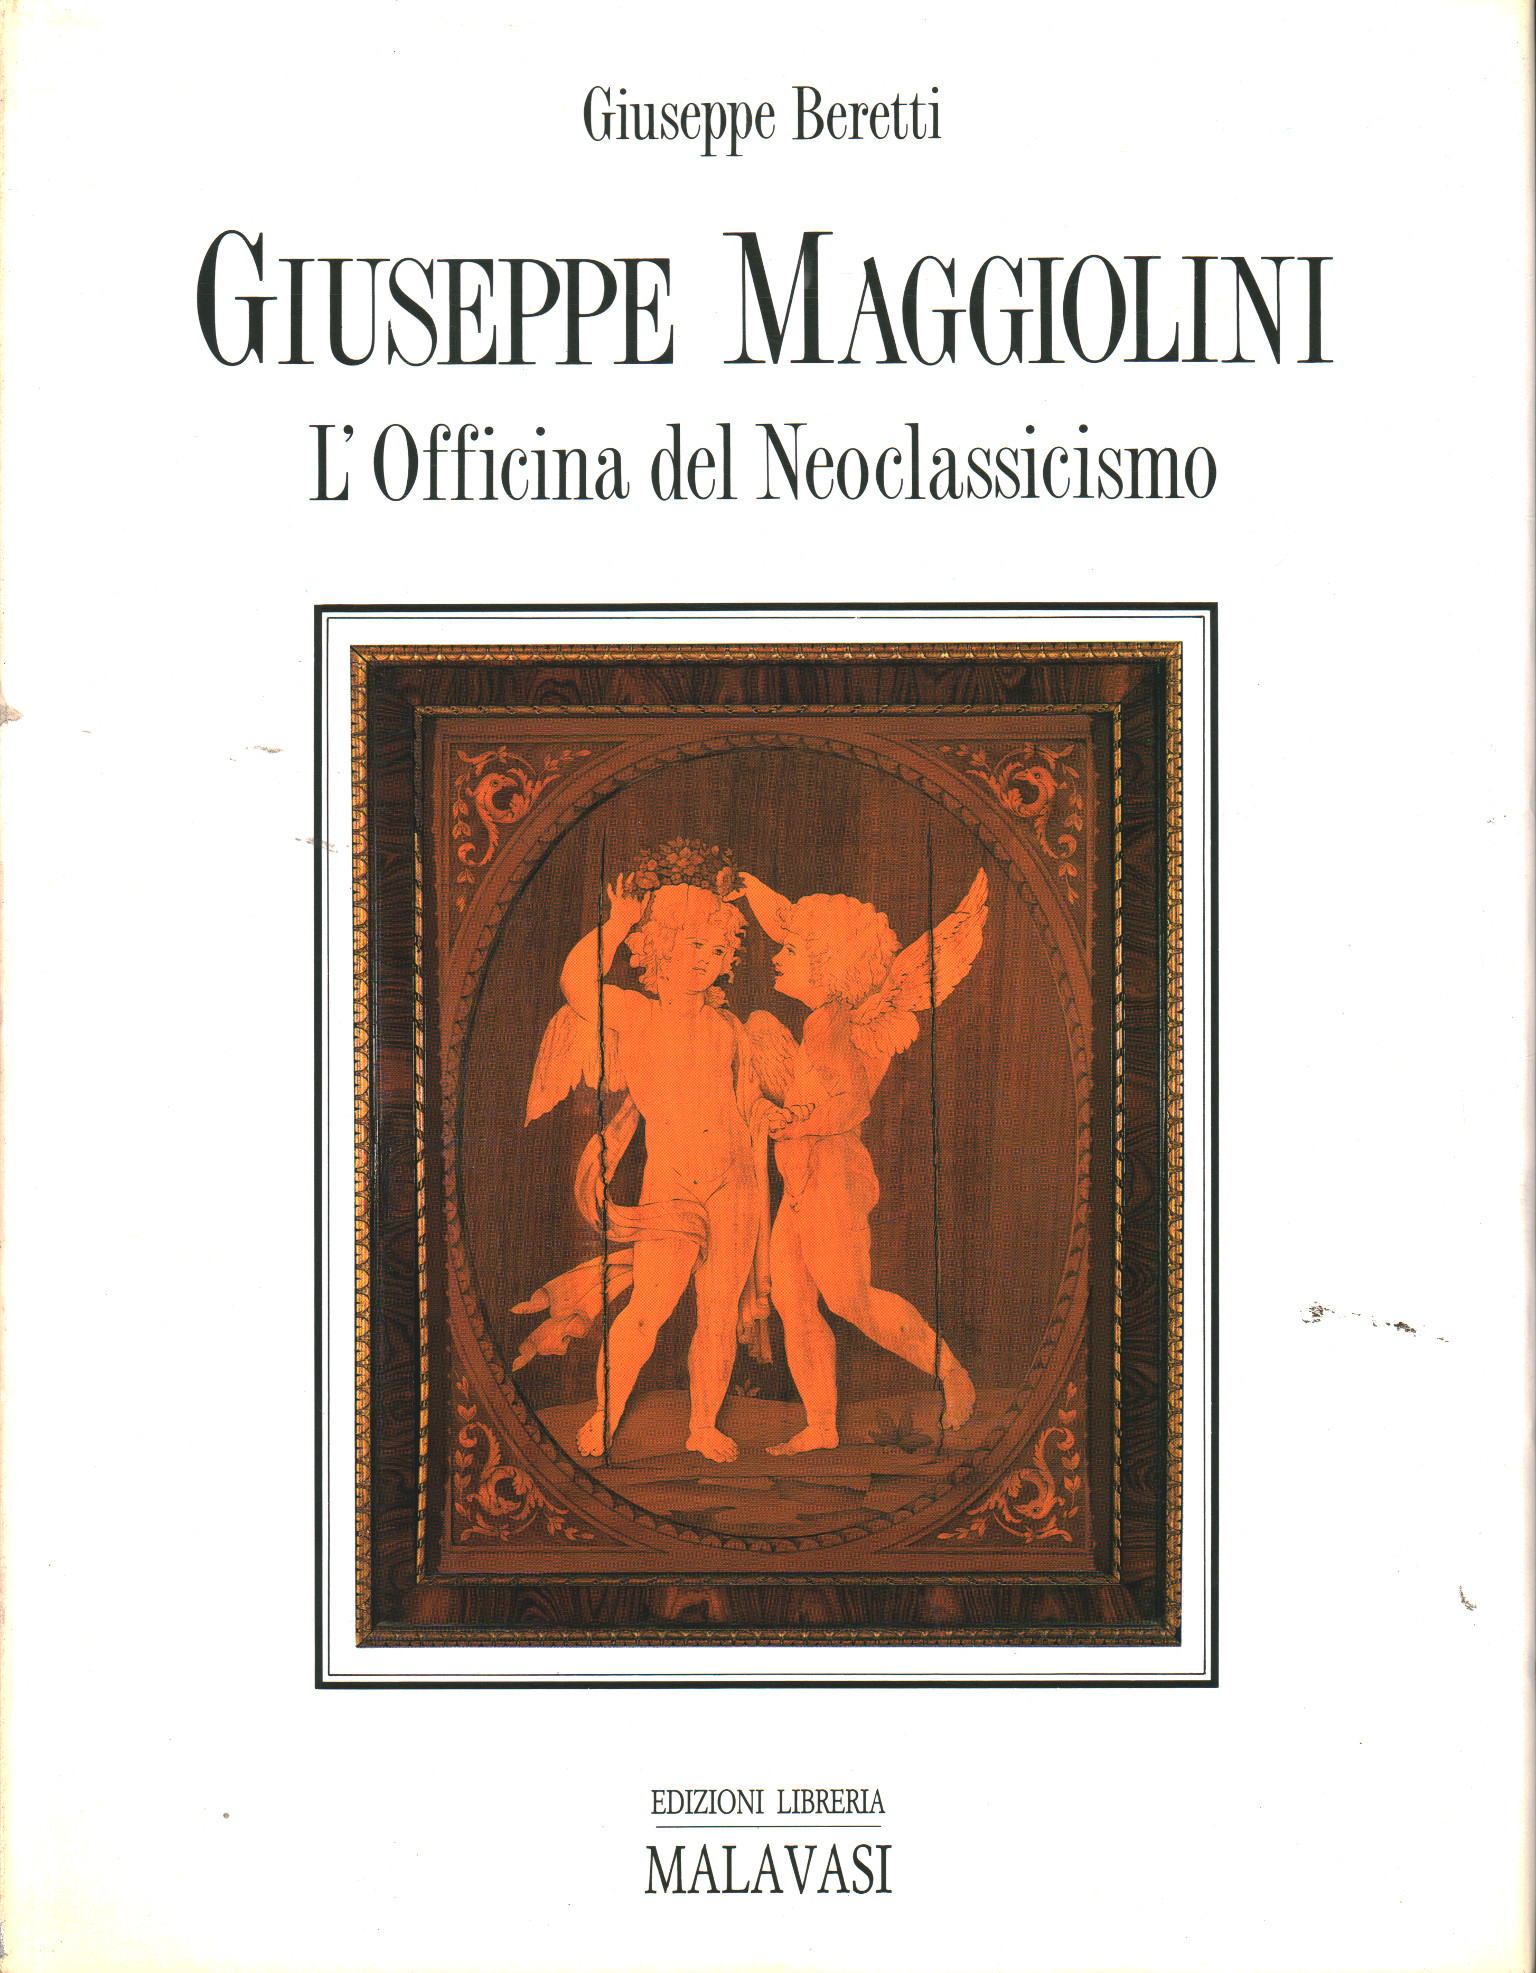 Giuseppe et Carlo Francesco Maggiolini, Giuseppe Beretti